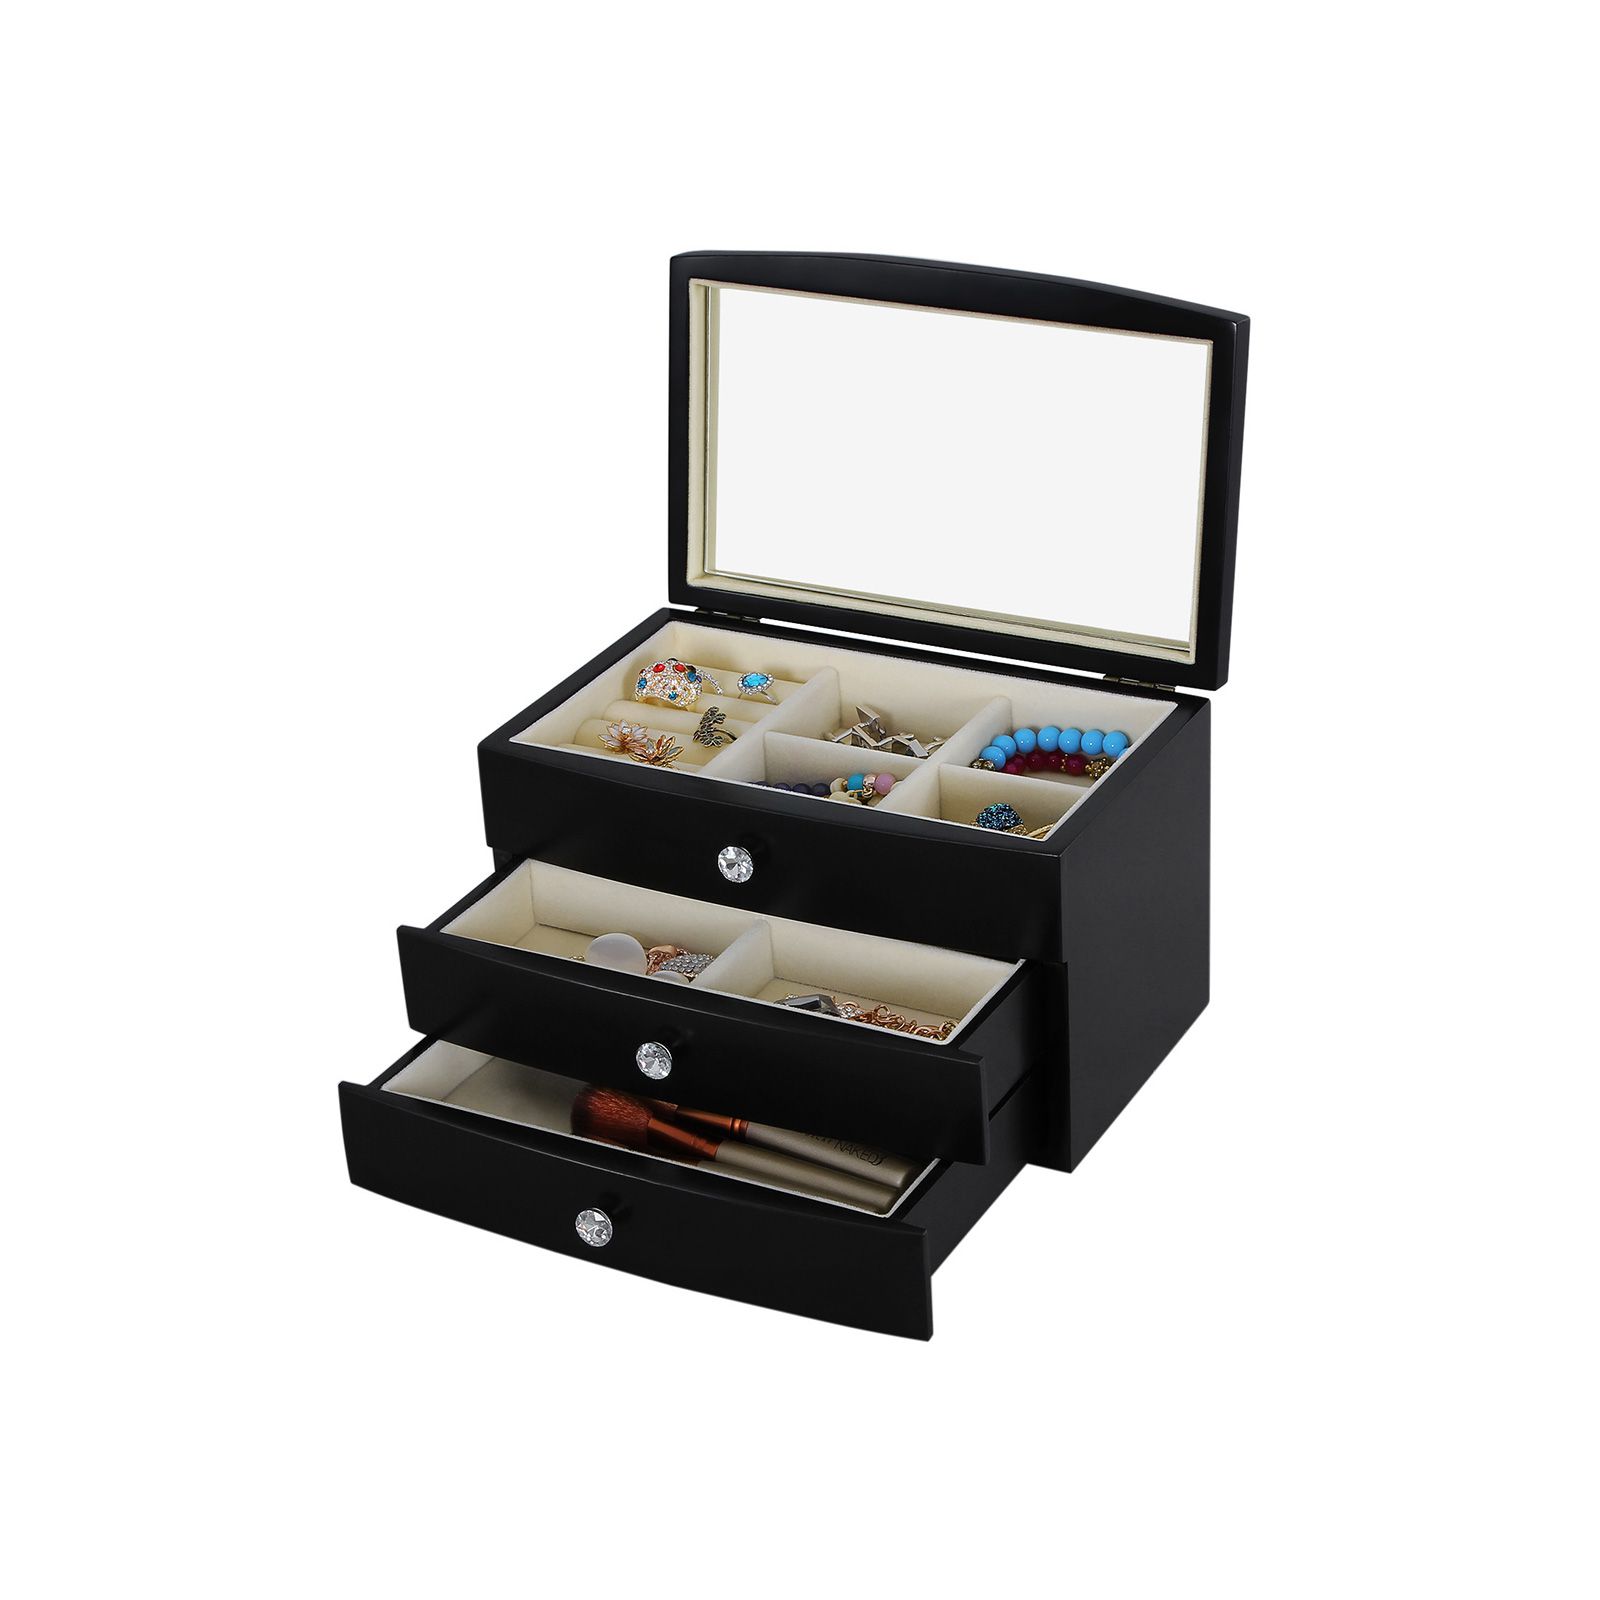 3 Layers Wooden Jewelry Box for Sale | Jewelry Storage & Organizer ...